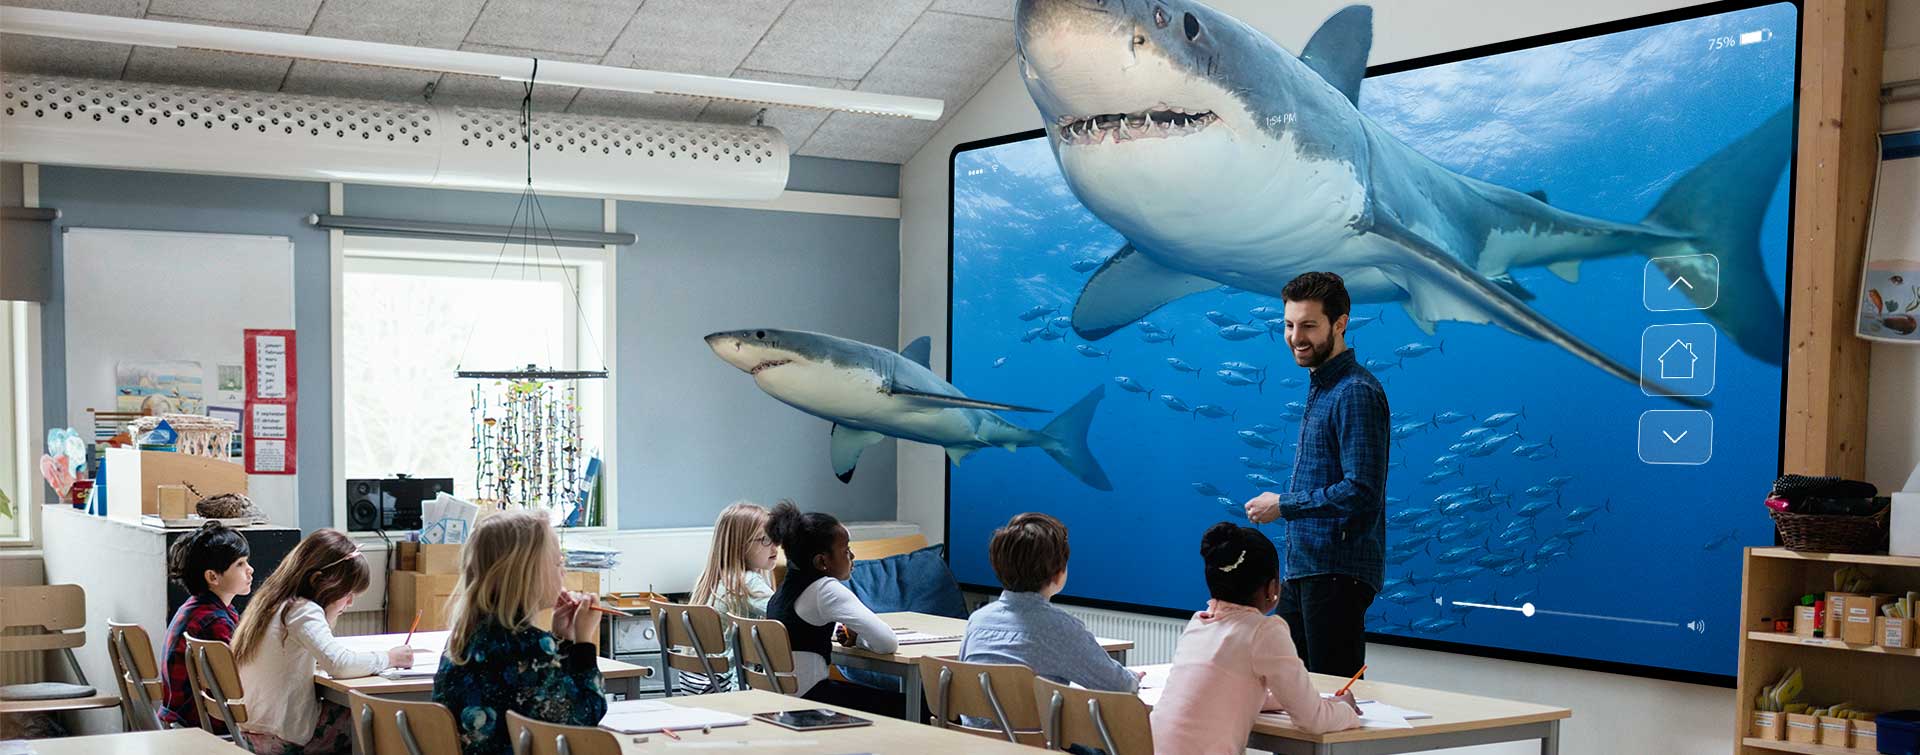 Tubarões em sala de aula com alunos e professores